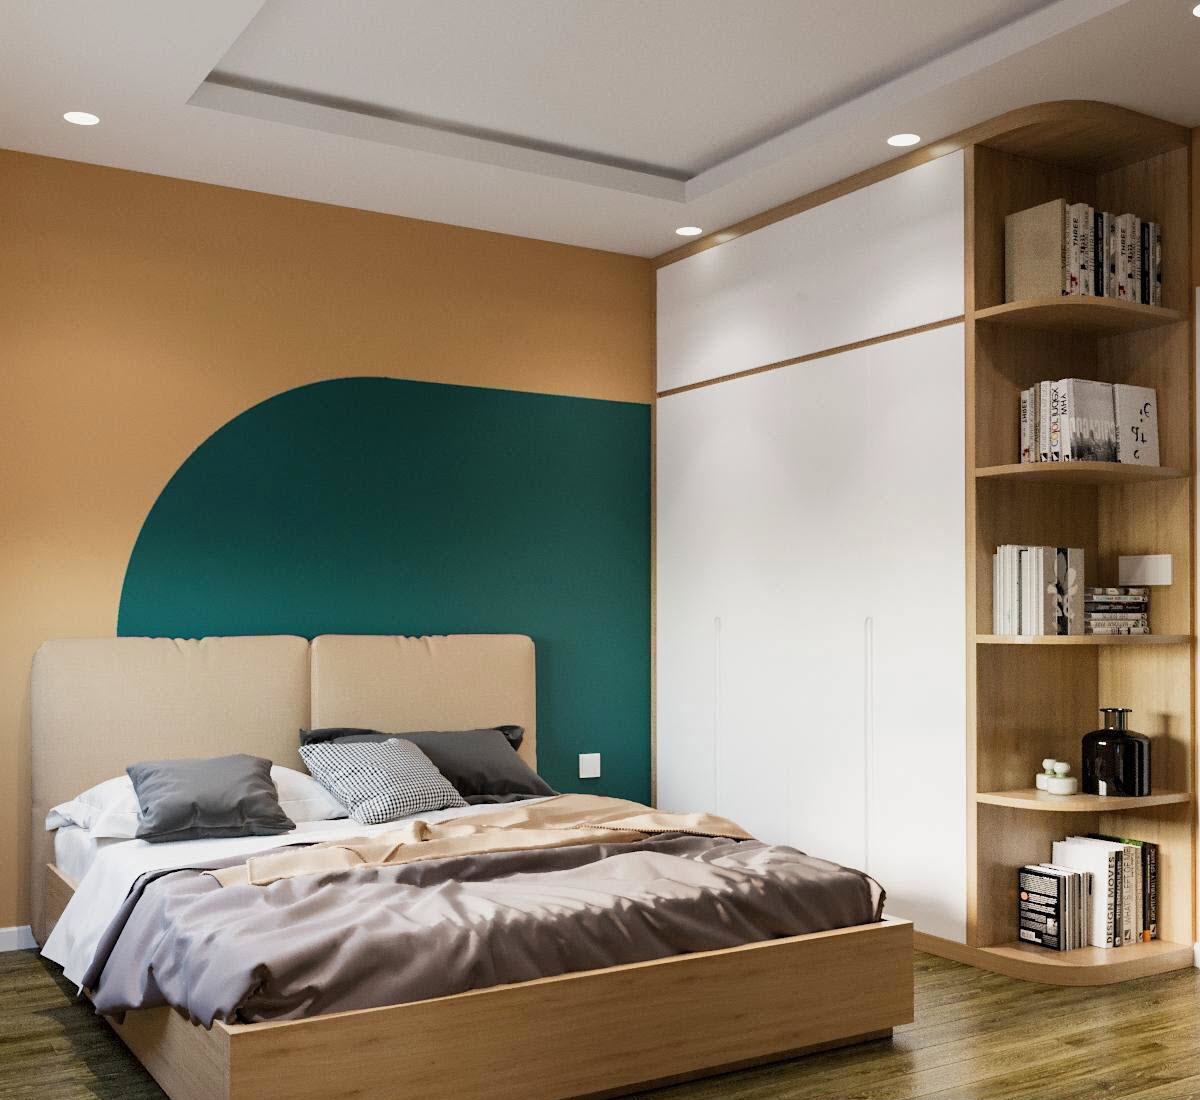 Trong phòng ngủ master, tủ quần áo cao kịch trần kết hợp giá sách cung cấp không gian lưu trữ thoải mái. Sự kết hợp ăn ý của hai màu sơn xanh - cam đầu giường tạo điểm nhấn xinh yêu cho không gian ngủ nghỉ.